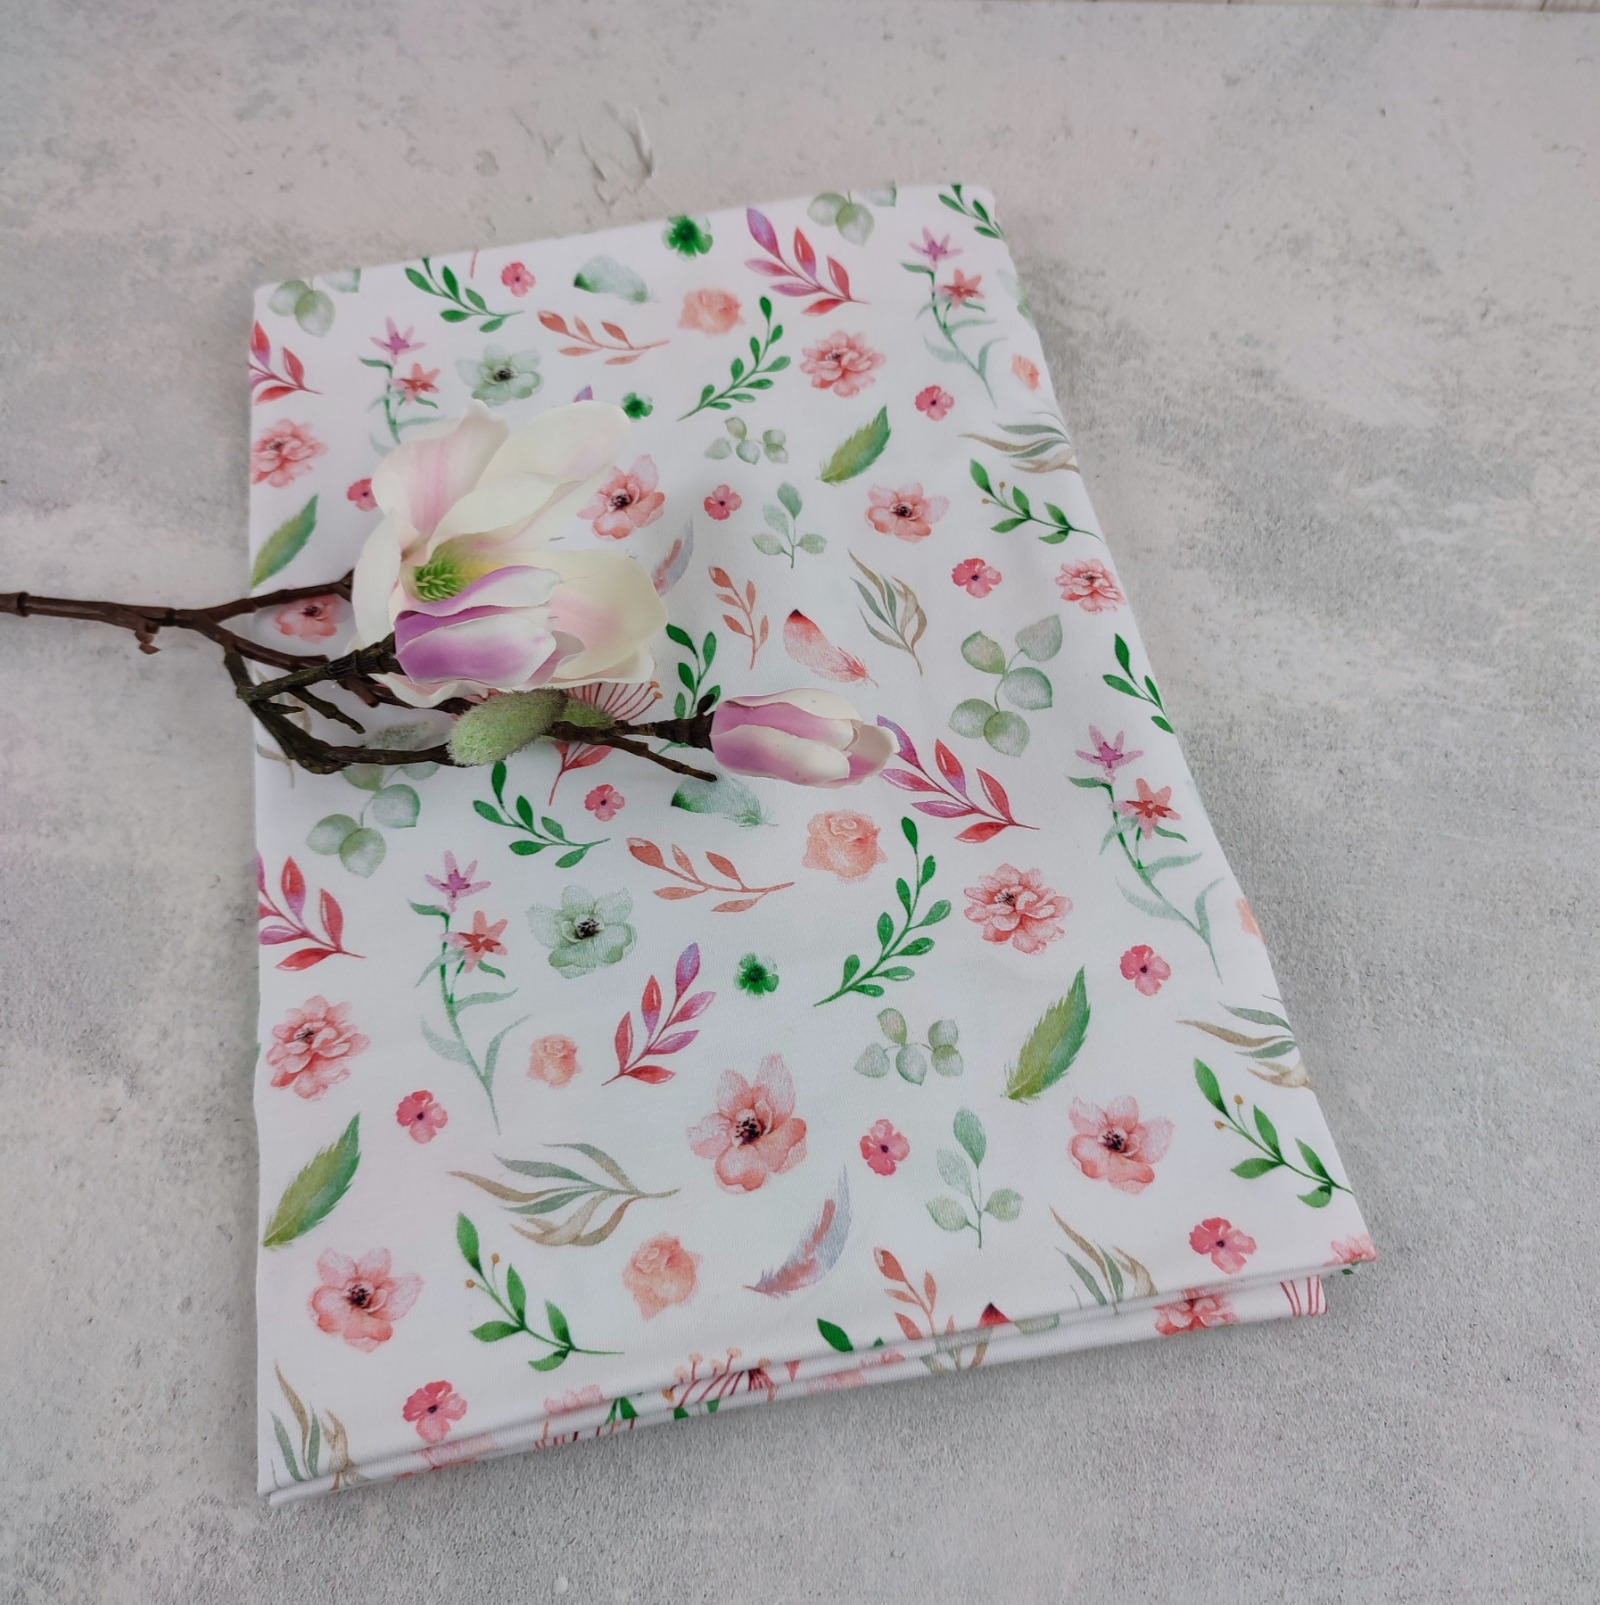 Loop Schlauchschal weiß mit kleinem Blumenmuster in lachsrosa und grün - Schal für Damen aus Jersey 7